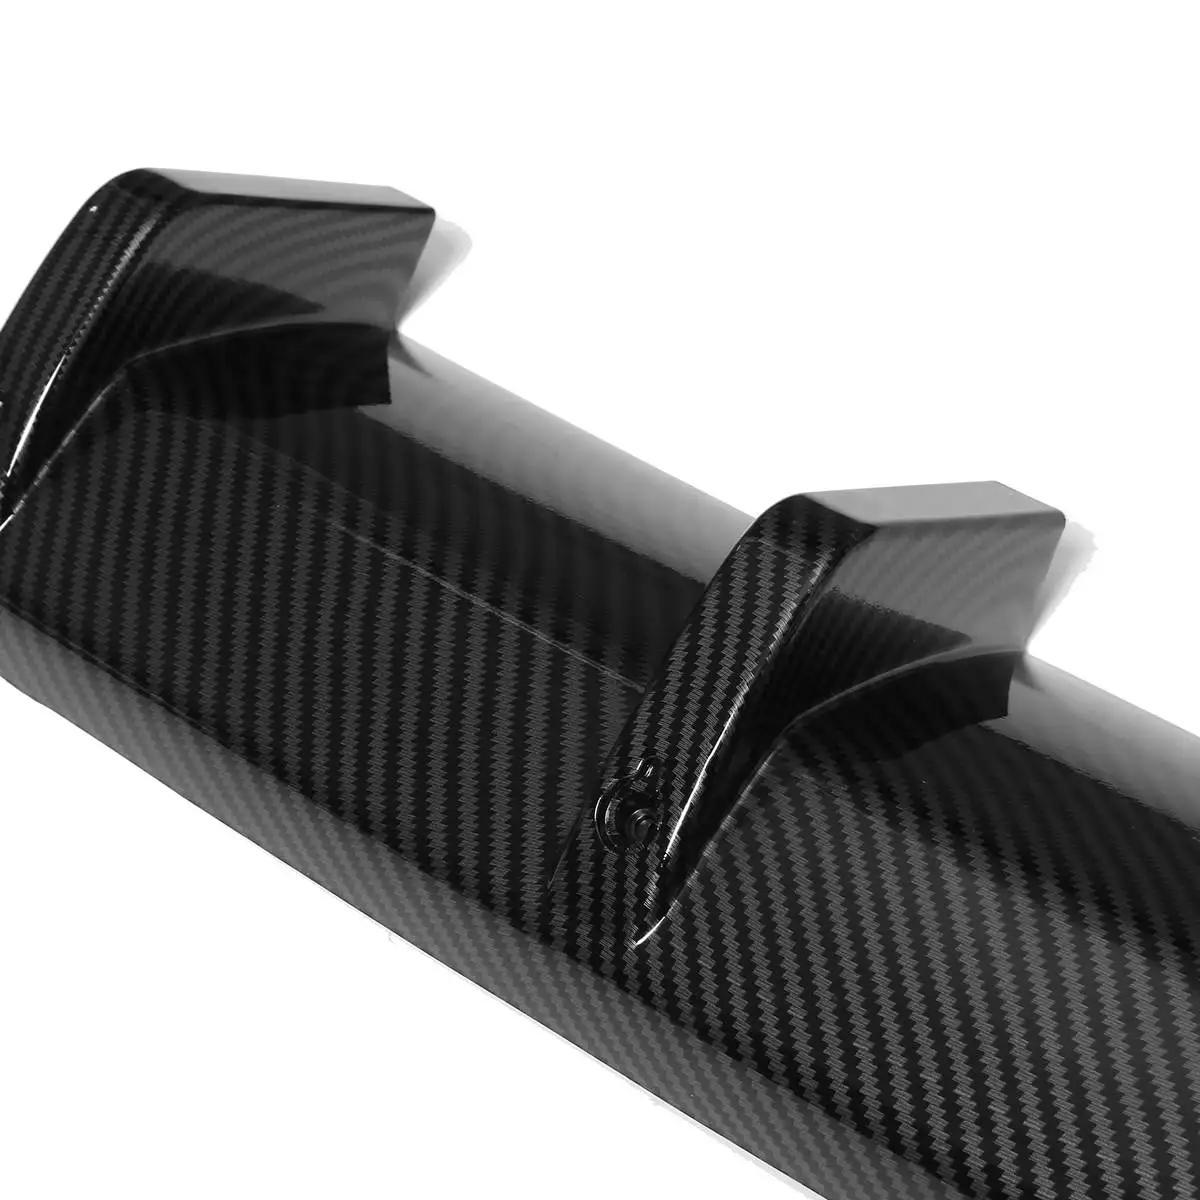 Автомобильный Стайлинг глянцевый черный/углеродное волокно вид 6 плавников Акула Универсальный Автомобильный диффузор, губа на задний бампер комплект надстройка бампер спойлер для губ